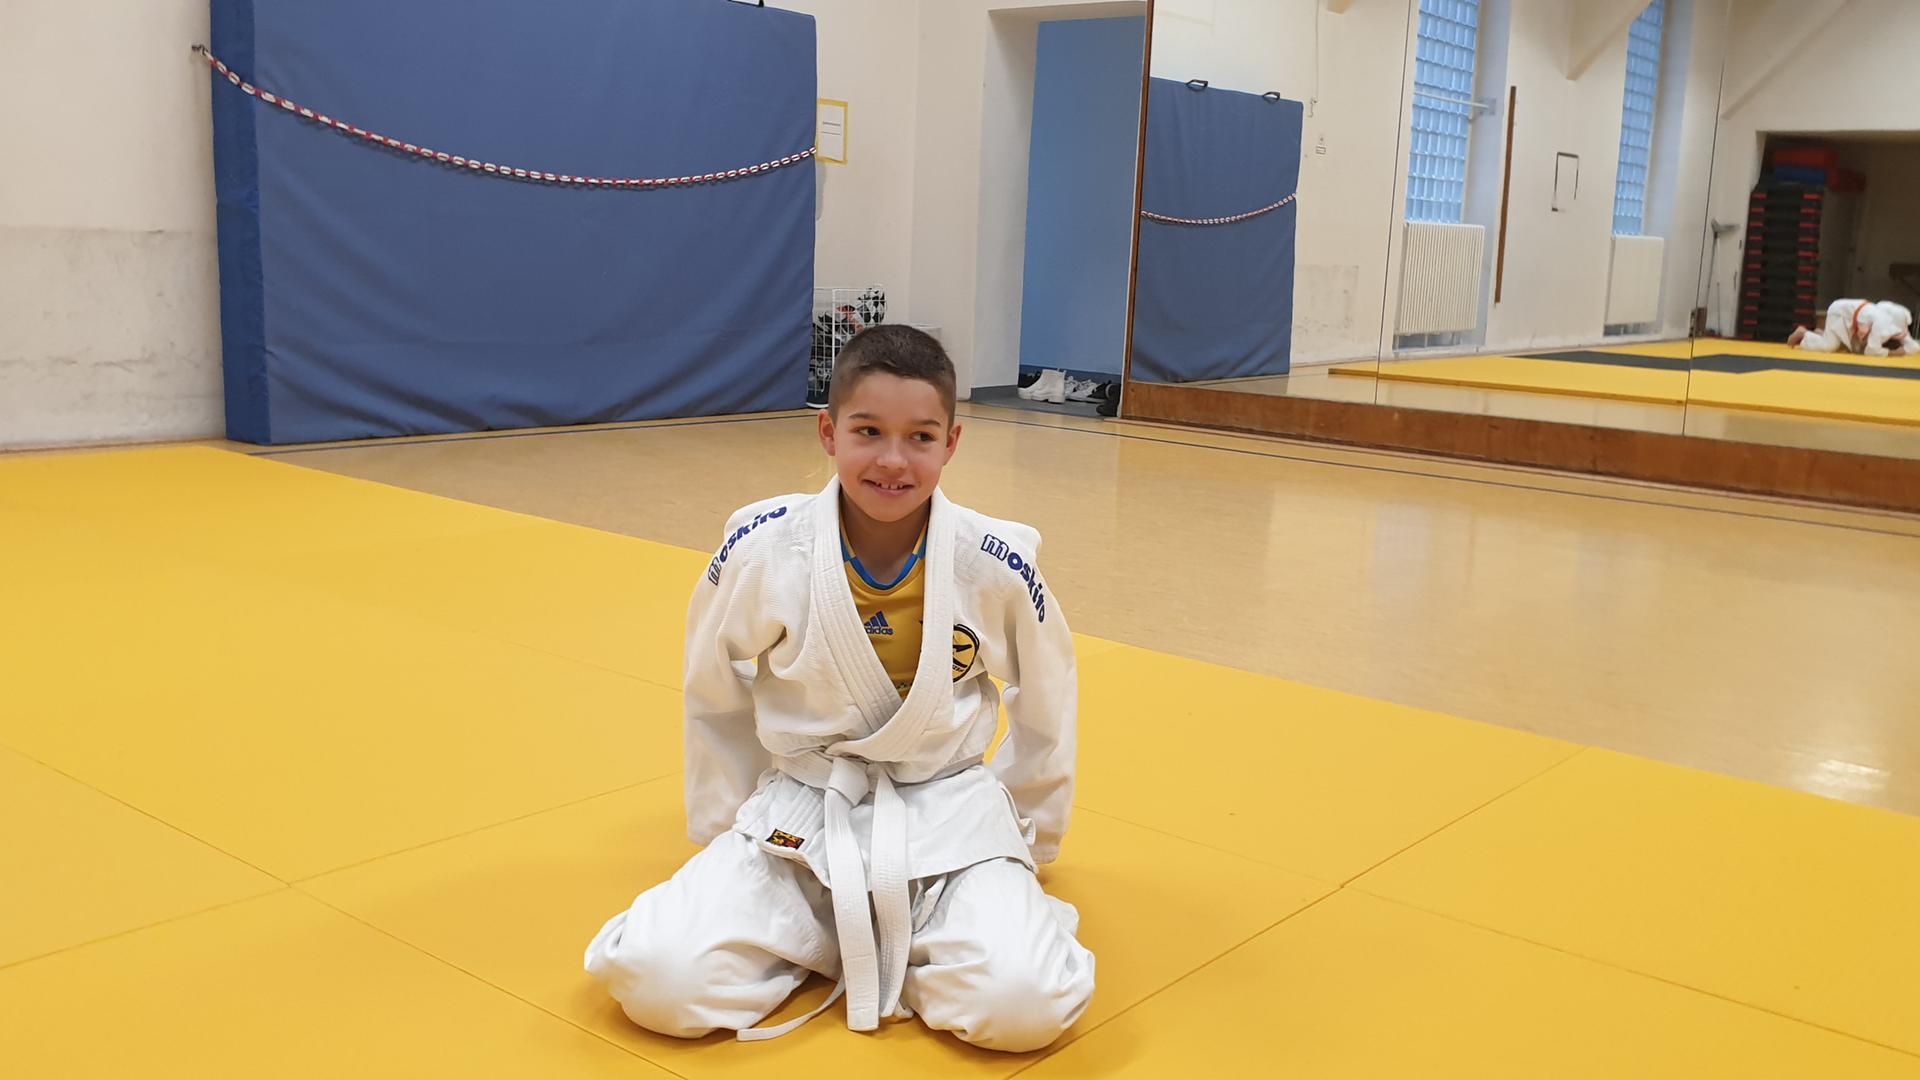 Der elfjährige Pavlo sitzt mit einem Judoanzug, einem Keikogi, bekleidet auf einer Judomatte in einer Turnhalle.